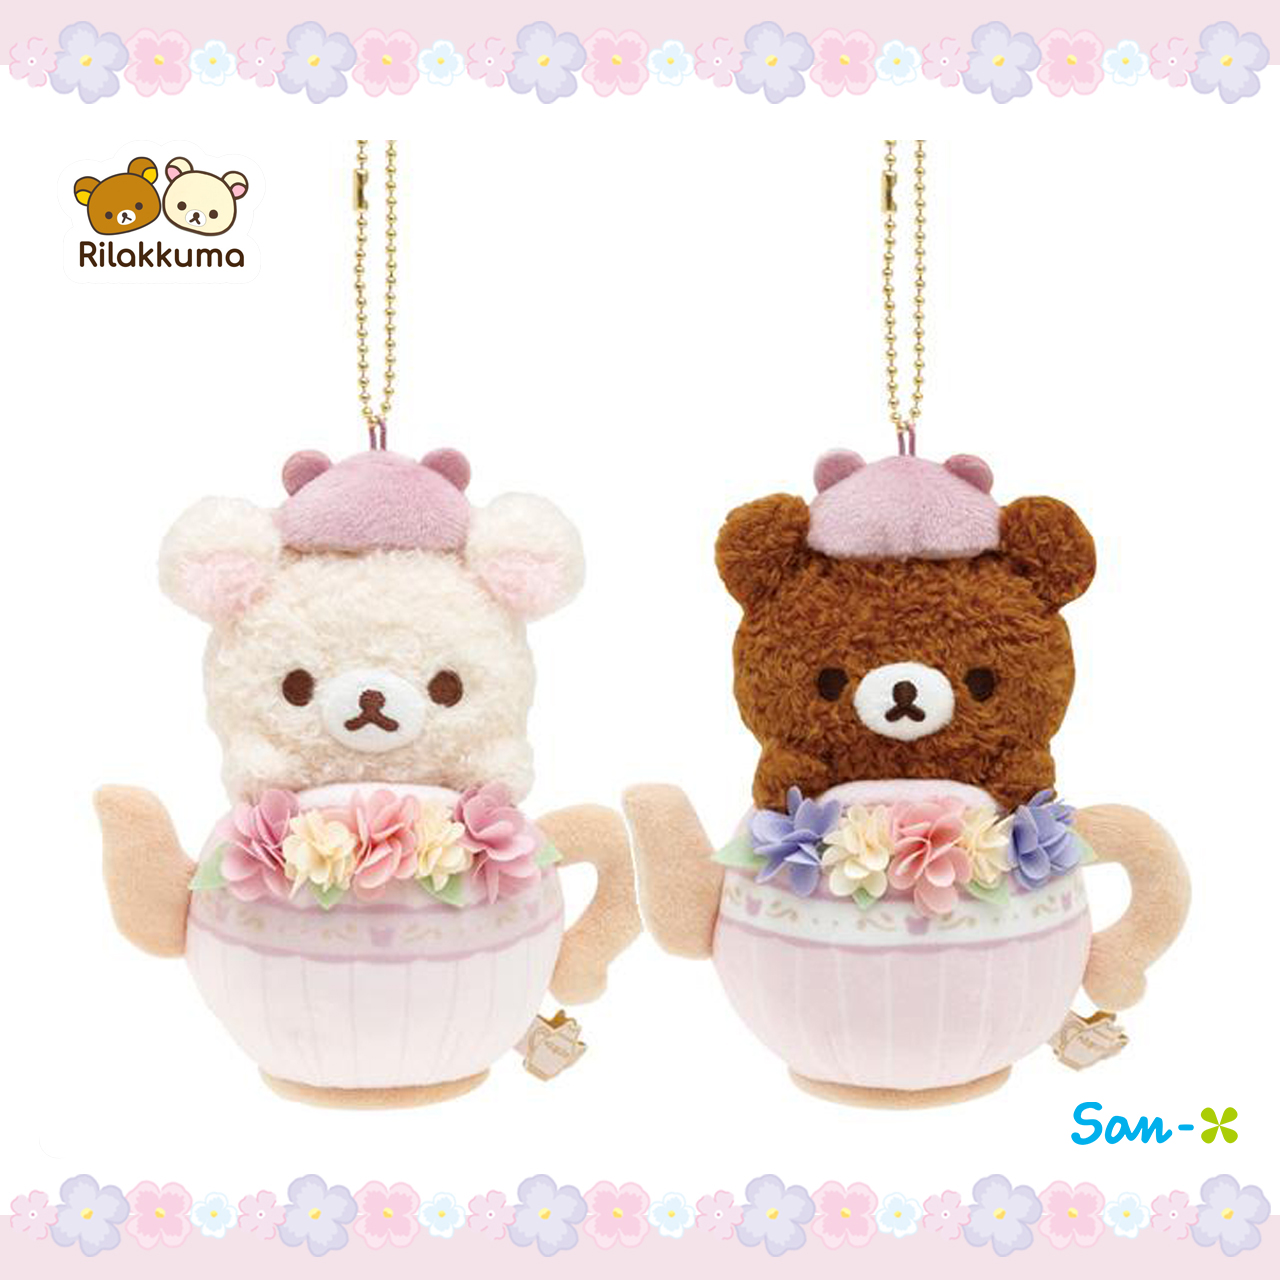 茶壺造型玩偶-拉拉熊 Rilakkuma san-x 日本進口正版授權